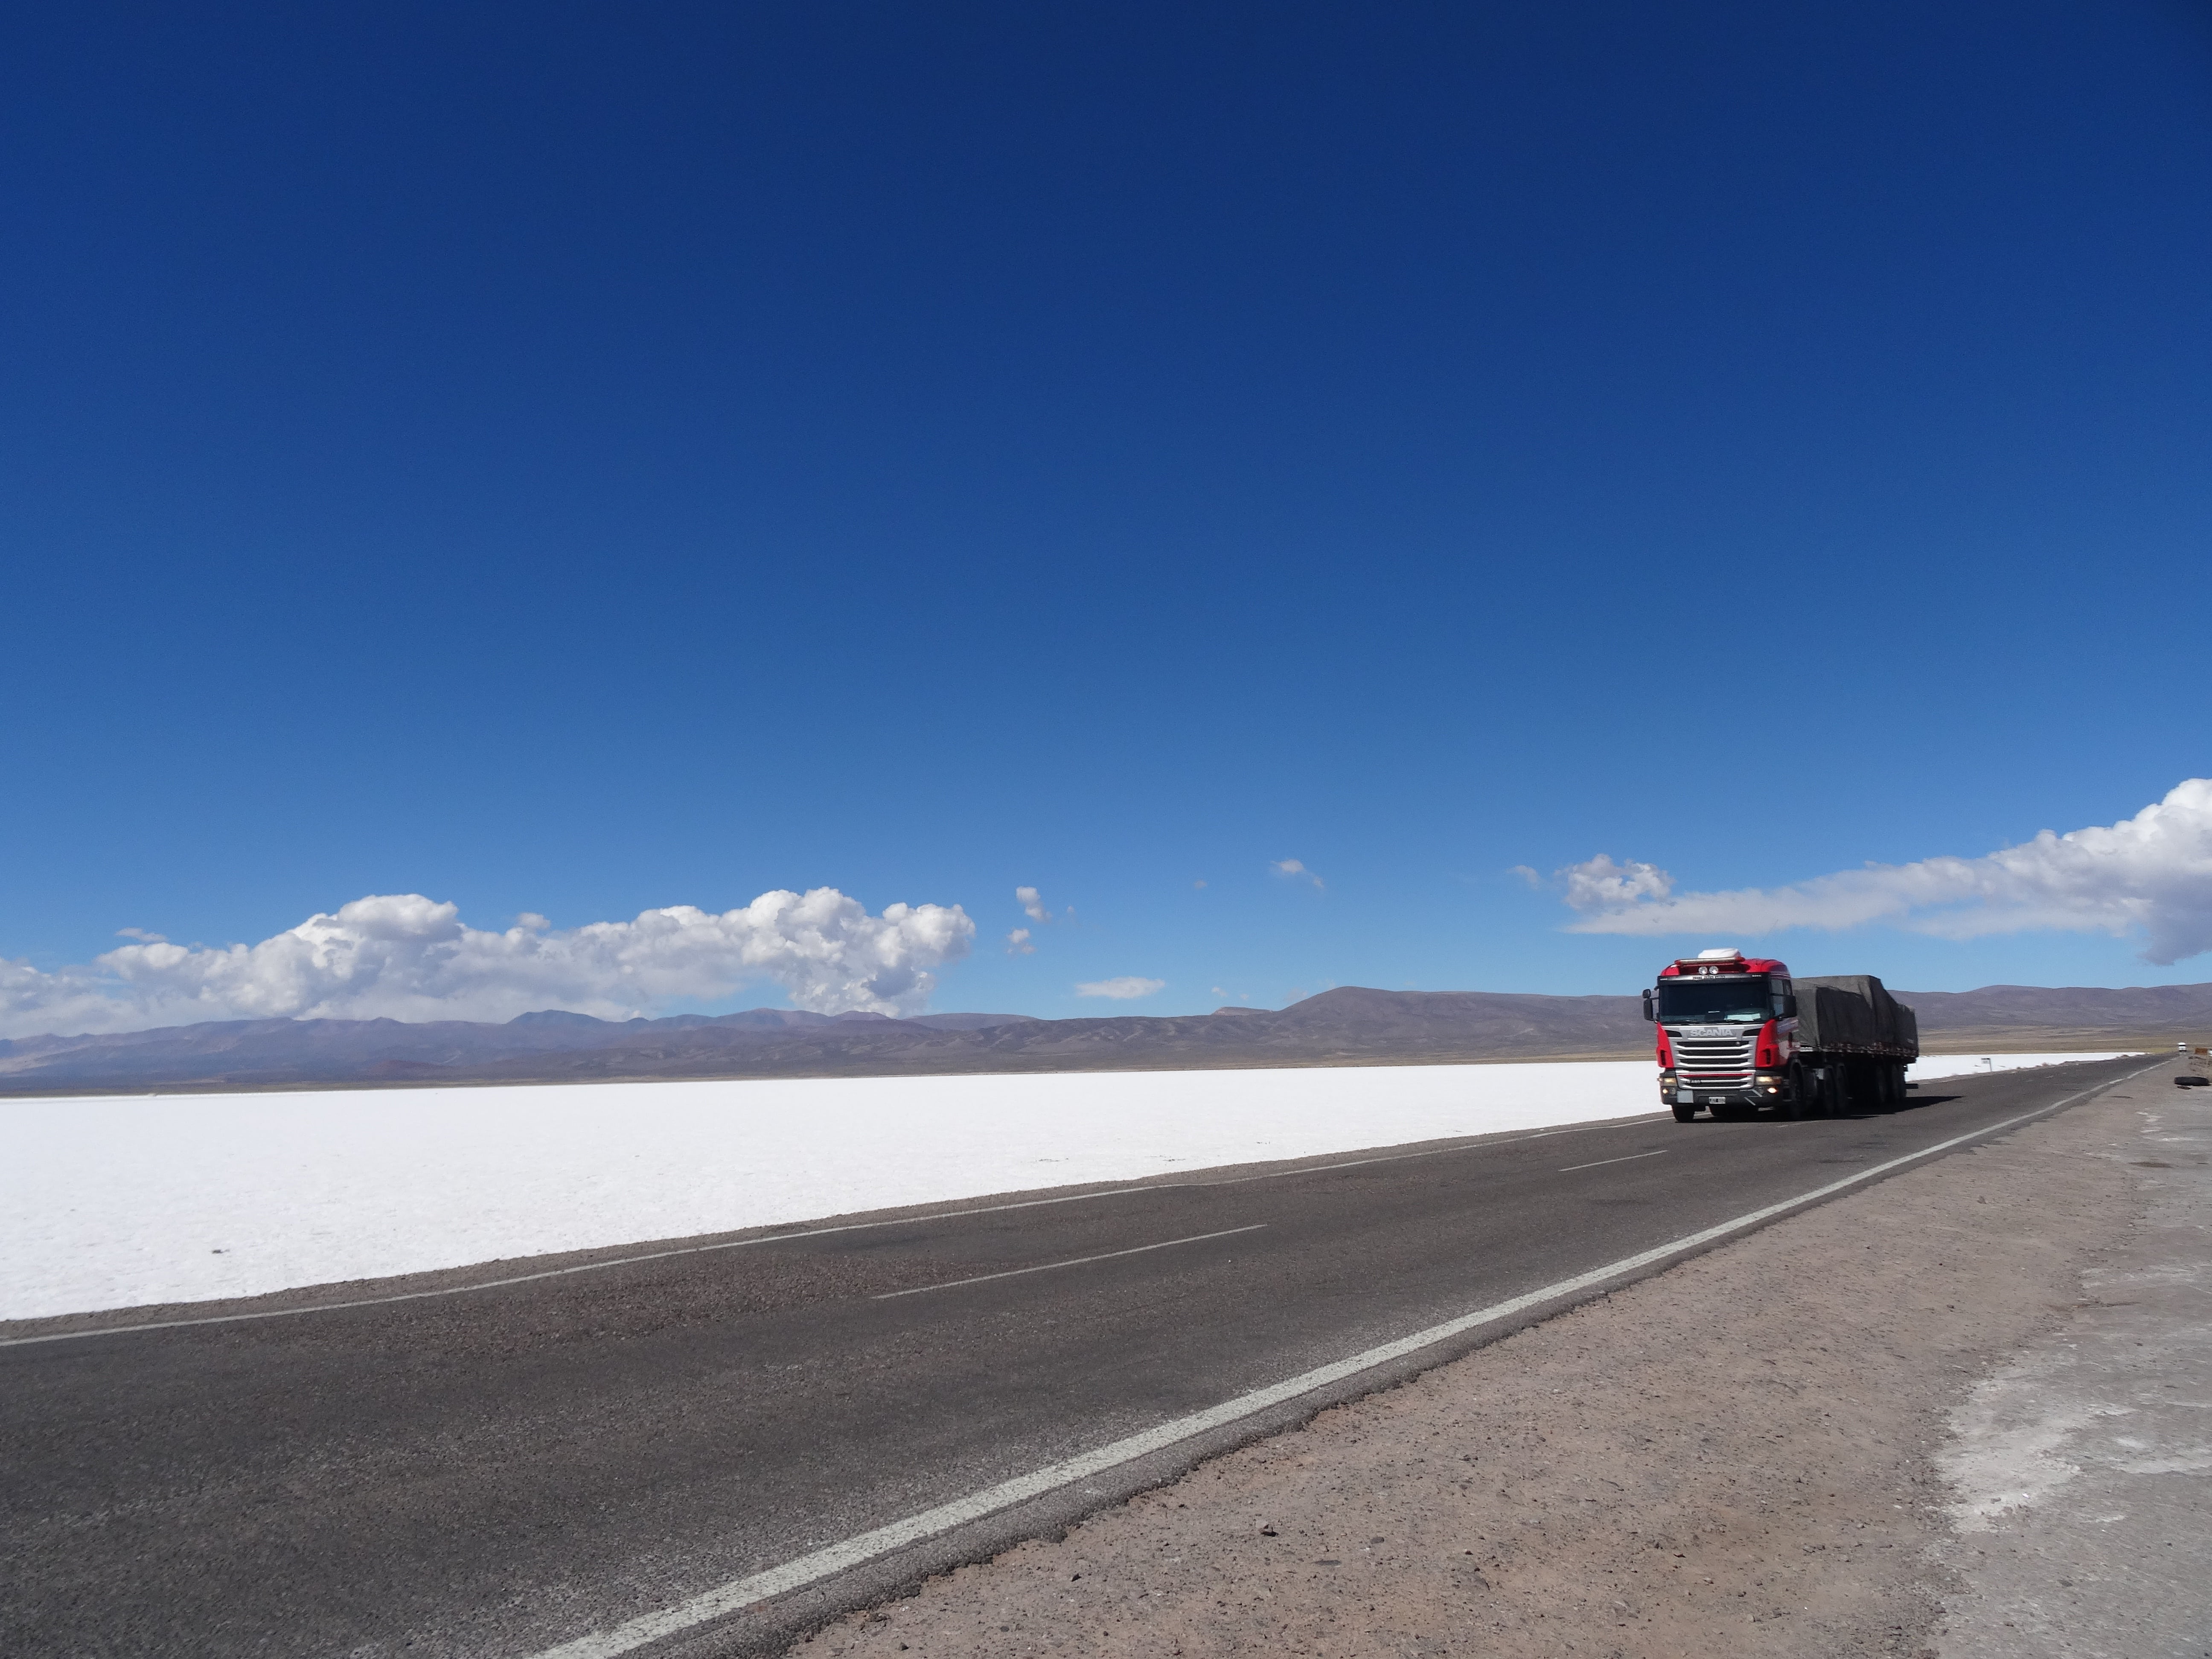 red truck, salt mines, desert, landscape, argentina, jujuy, sky